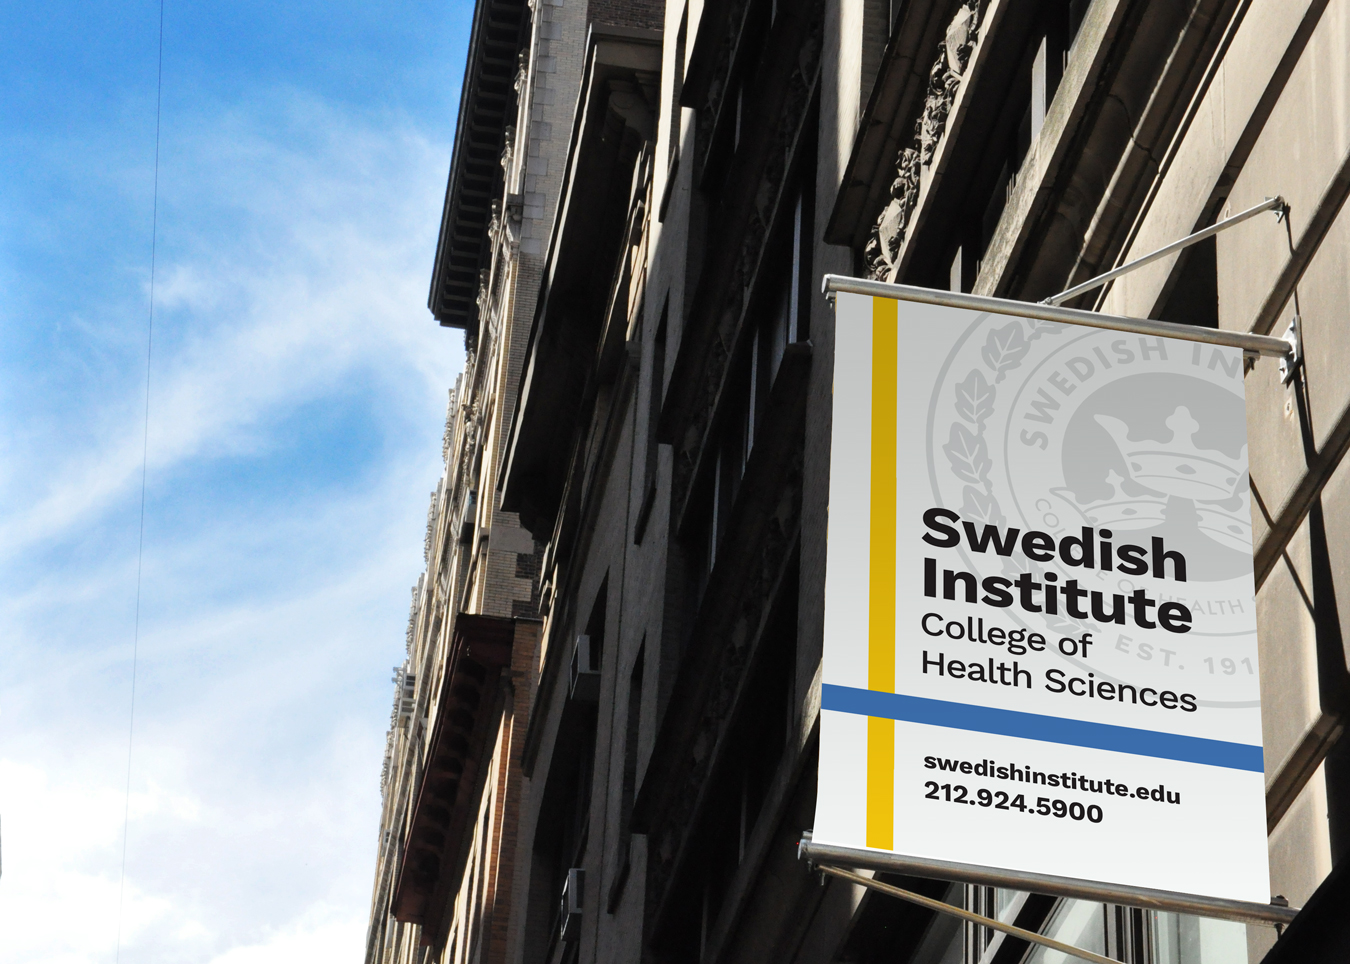 Brand design or Swedish Institute